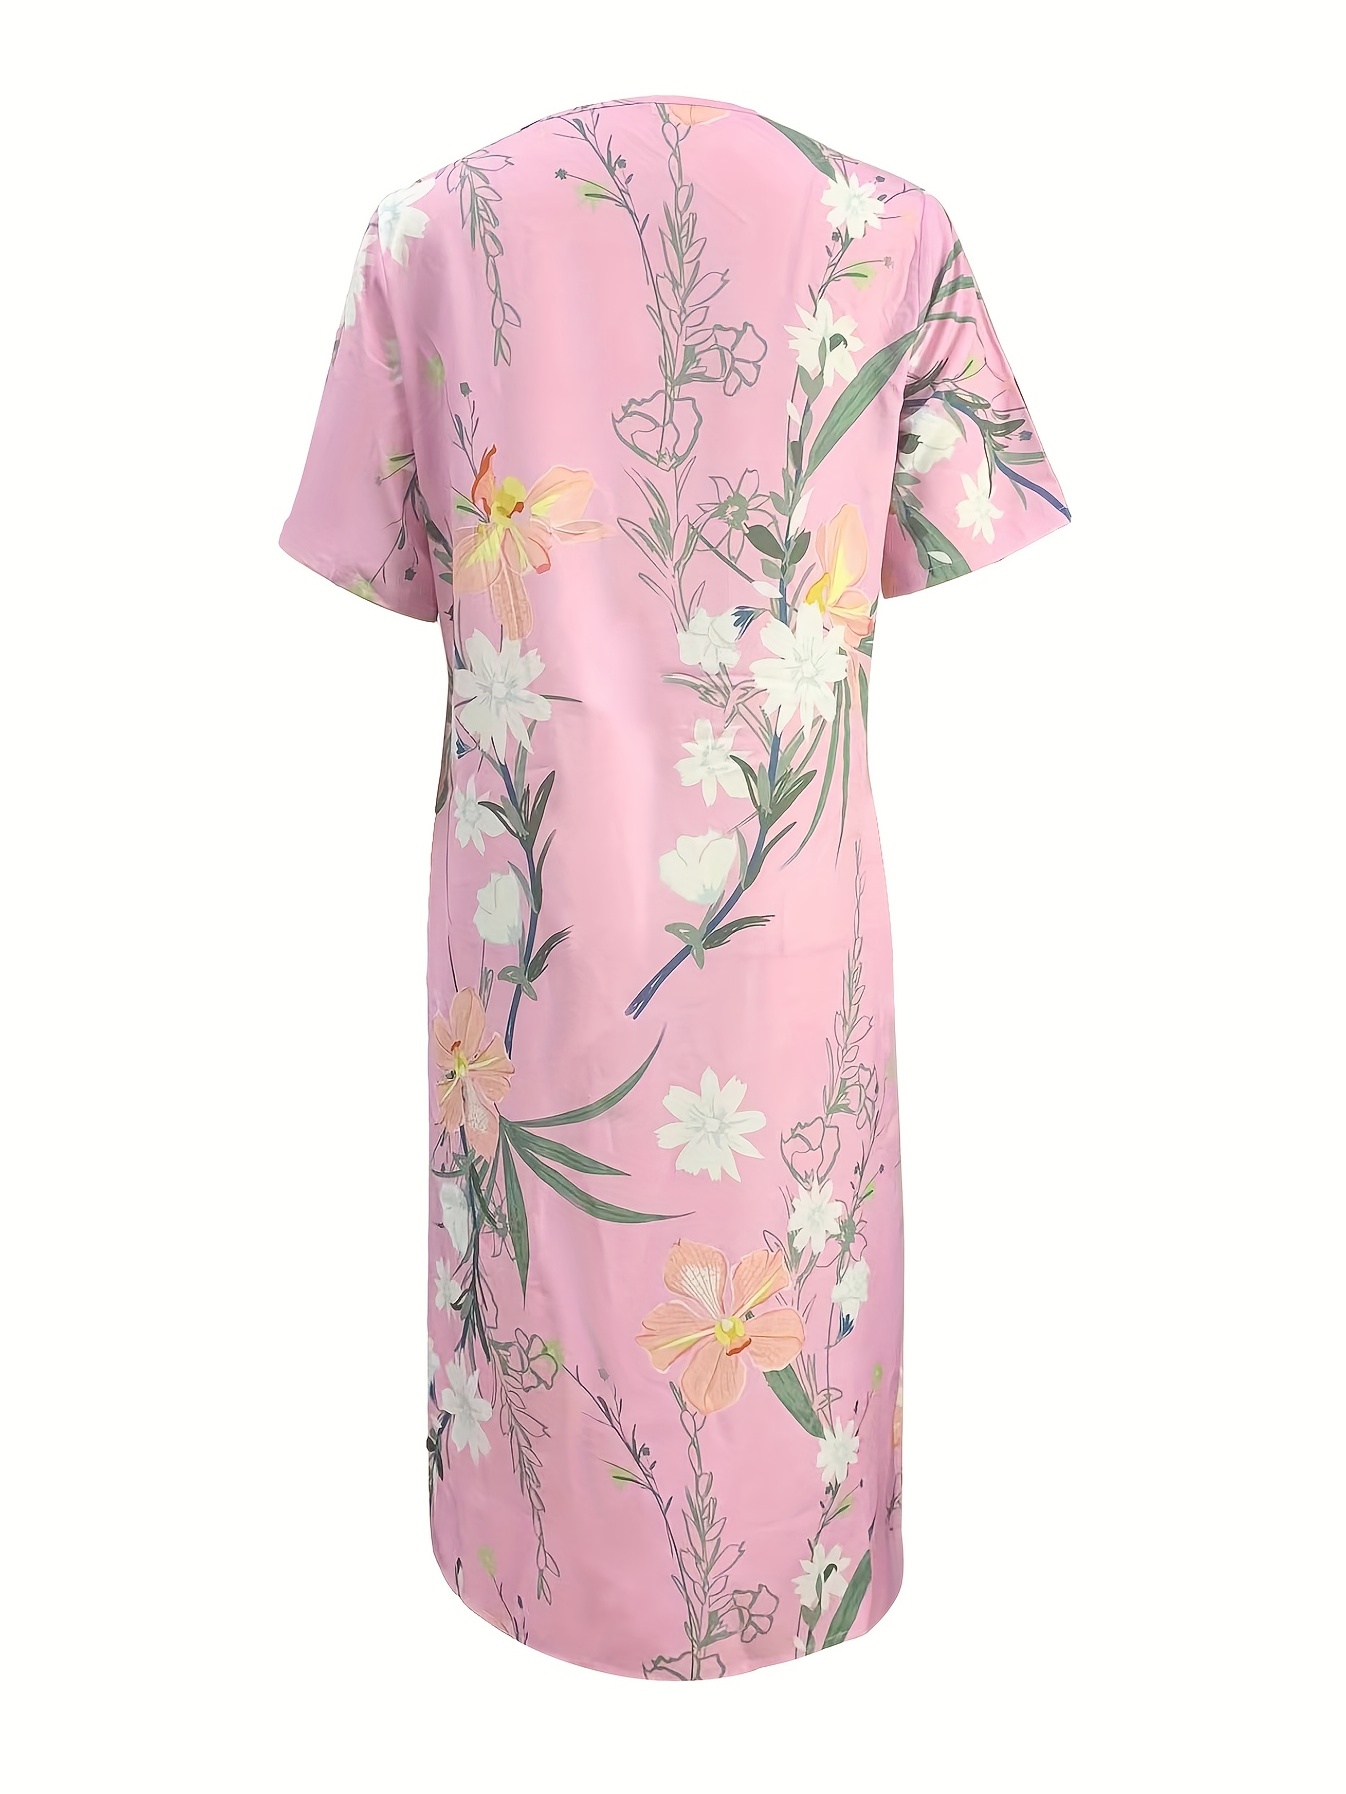 floral print high waist dress casual crew neck short sleeve summer dress womens clothing details 11